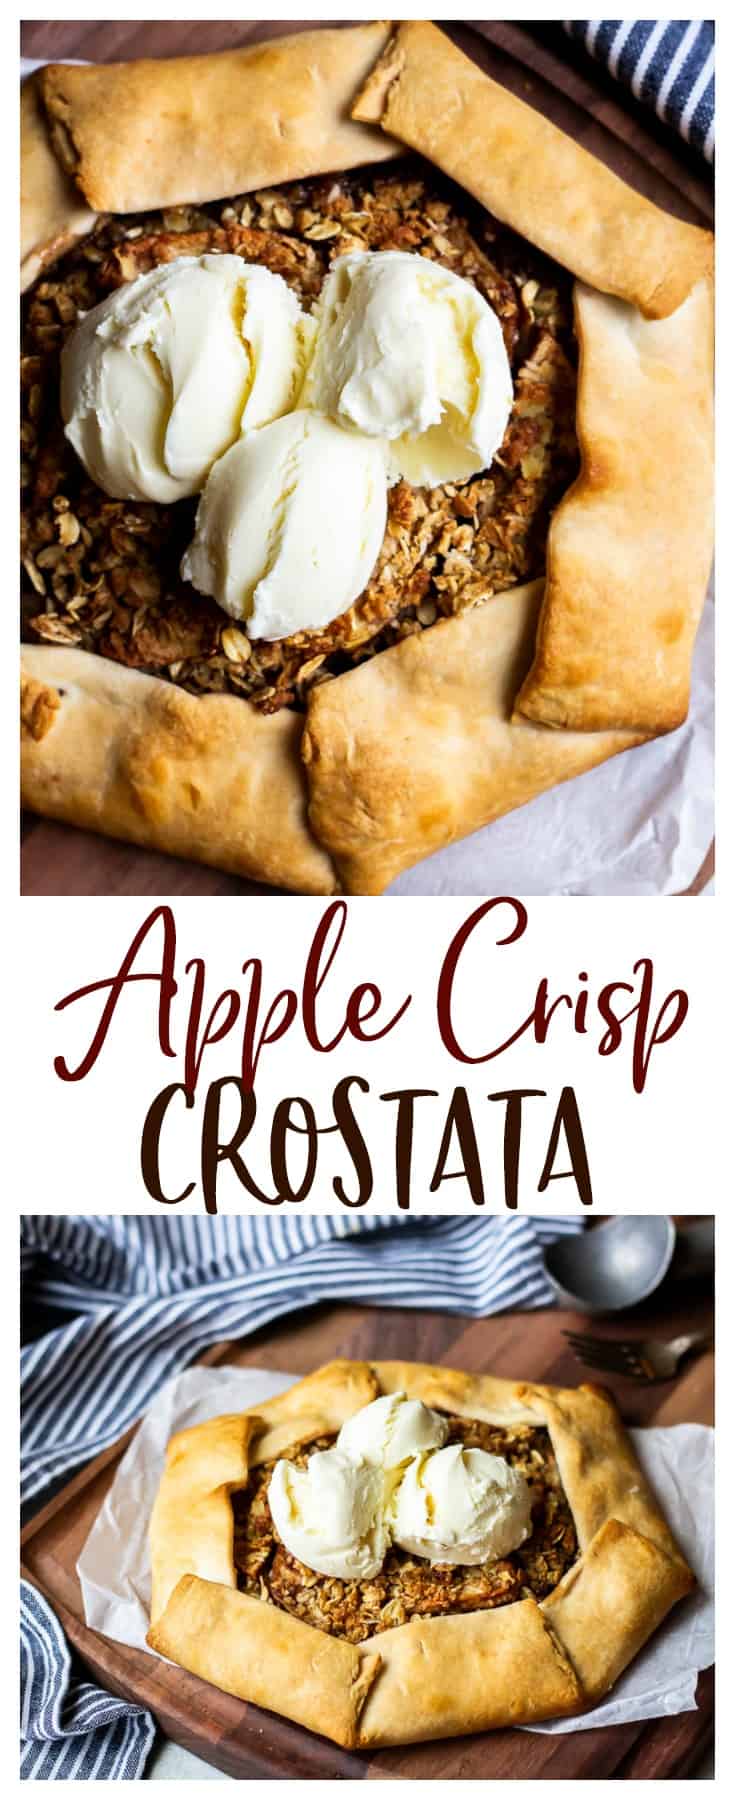 Apple Crisp Crostata Recipe - Delicious Little Bites